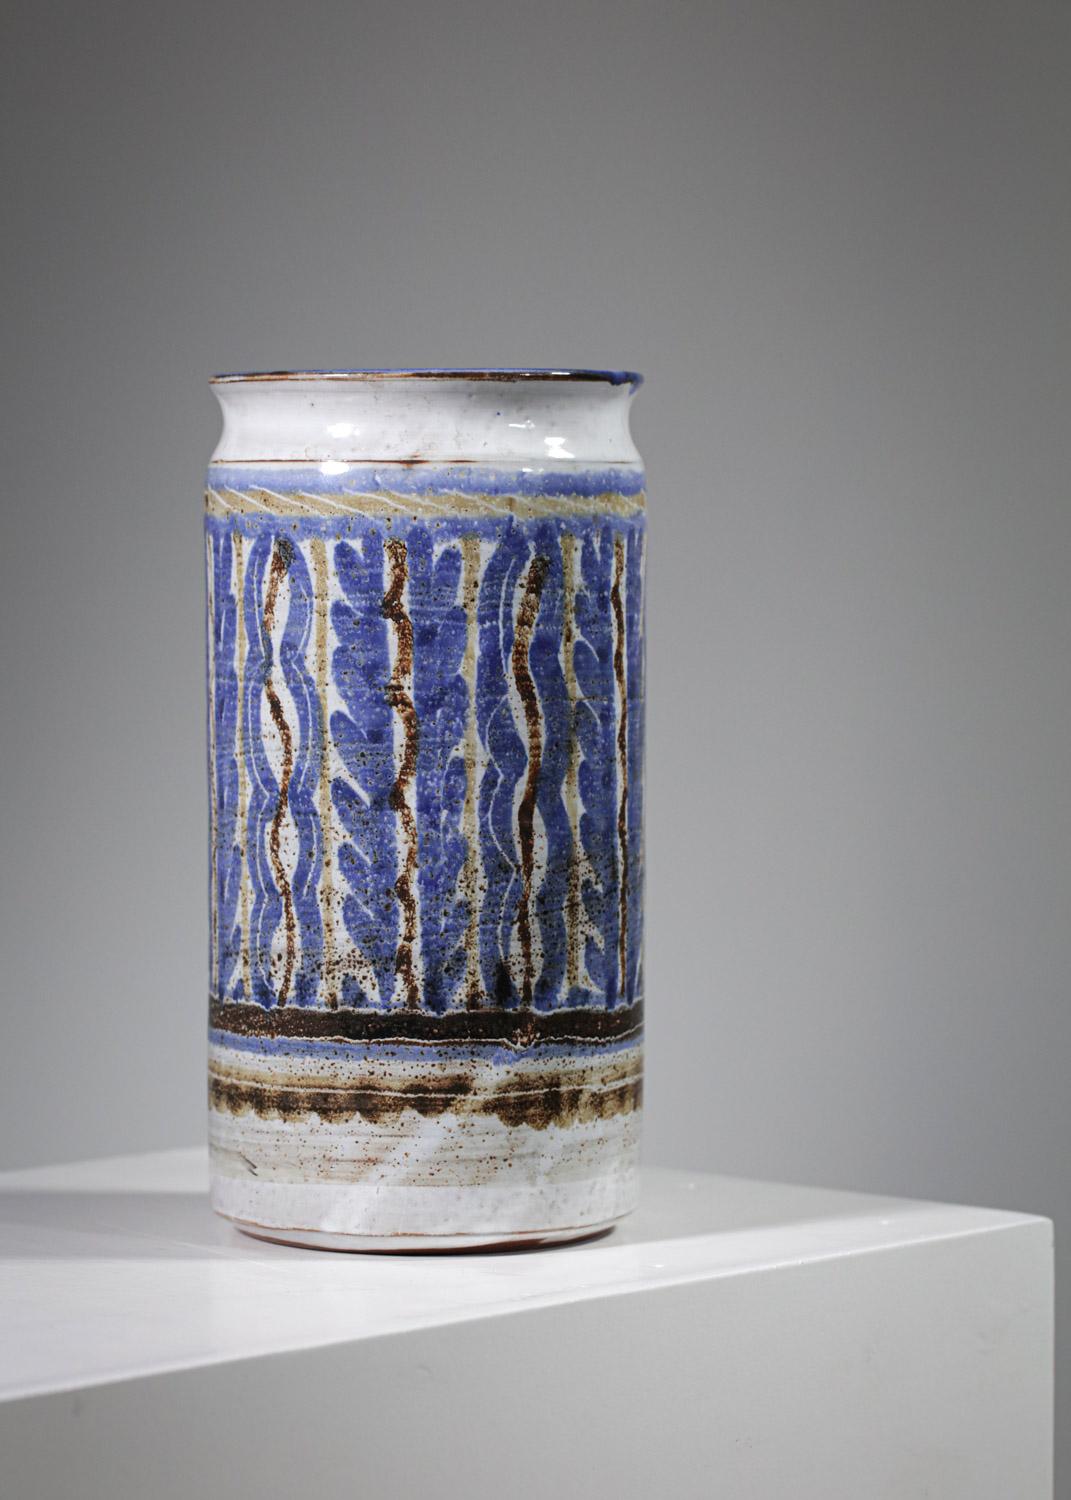 Vase aus den 50er Jahren von dem französischen Keramiker Michel Barbier. Zylindrische Vase, glasiert mit blauen, beigen und braunen Farben. Dekorative Motive auf der gesamten Vase. Sehr schöner Vintage-Zustand, beachten Sie einen Chip am Rand (siehe